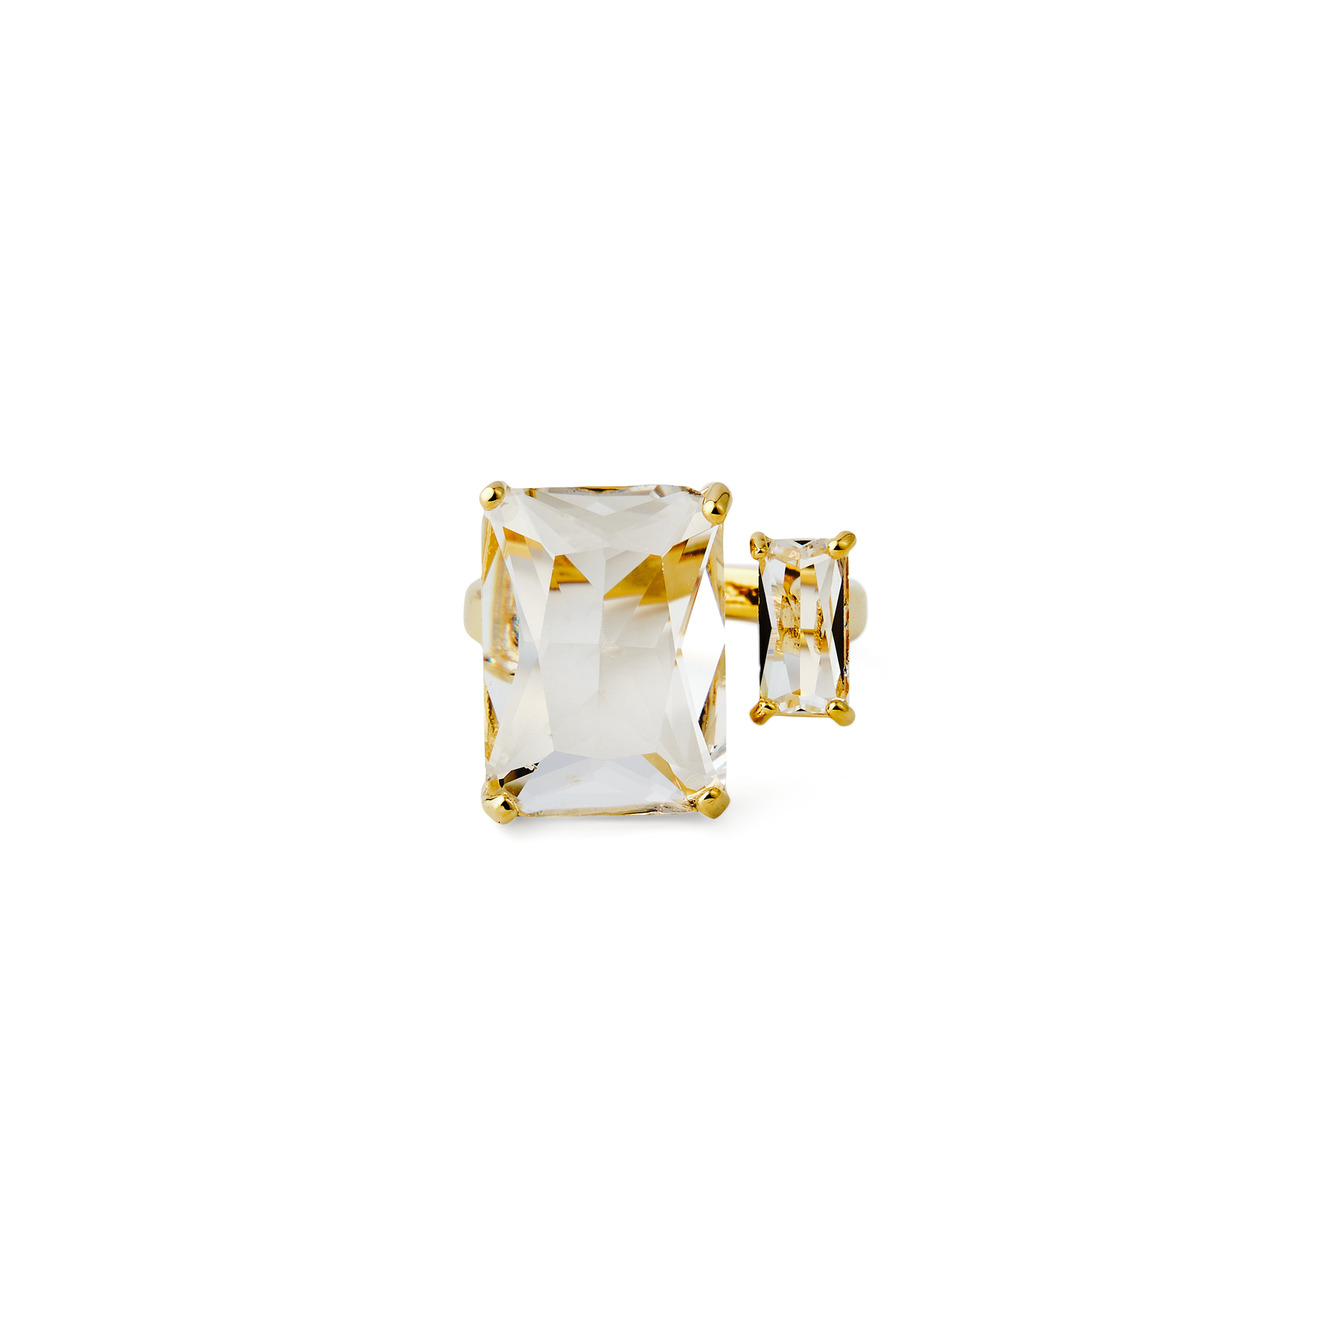 Herald Percy Золотистое кольцо с двумя разными кристаллами цена и фото